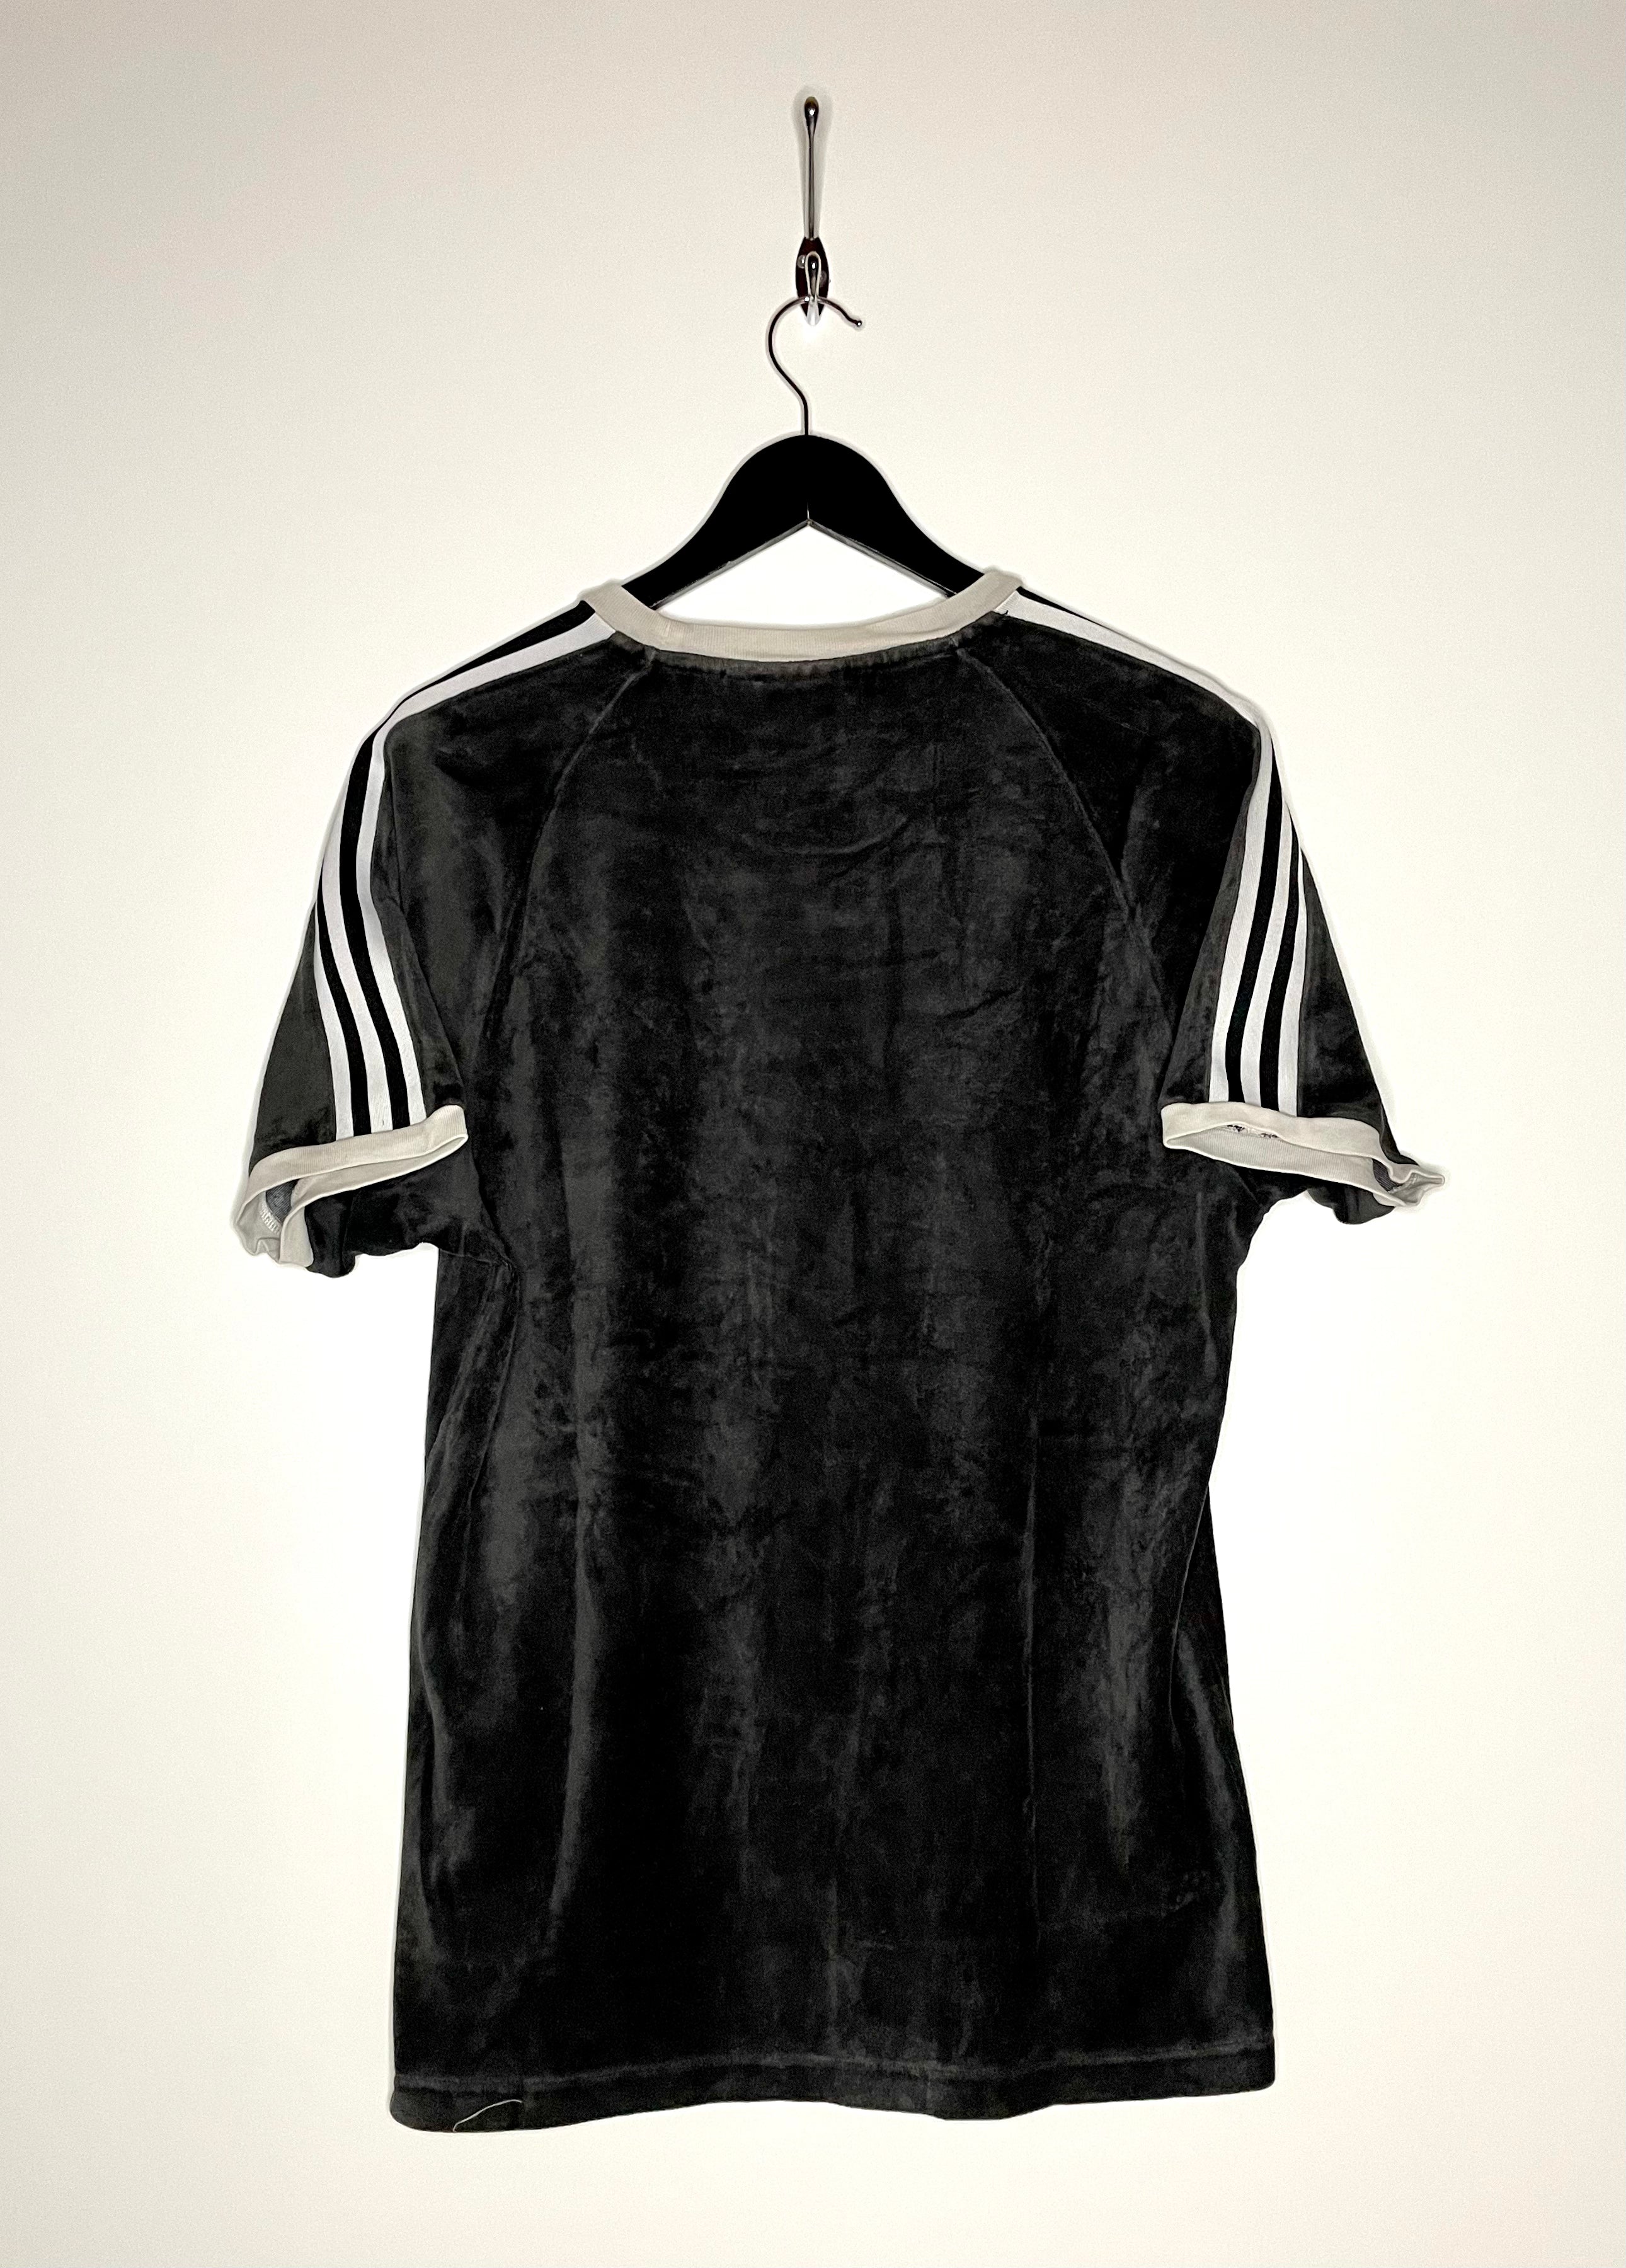 Adidas Vintage Samt T-Shirt Schwarz Größe M